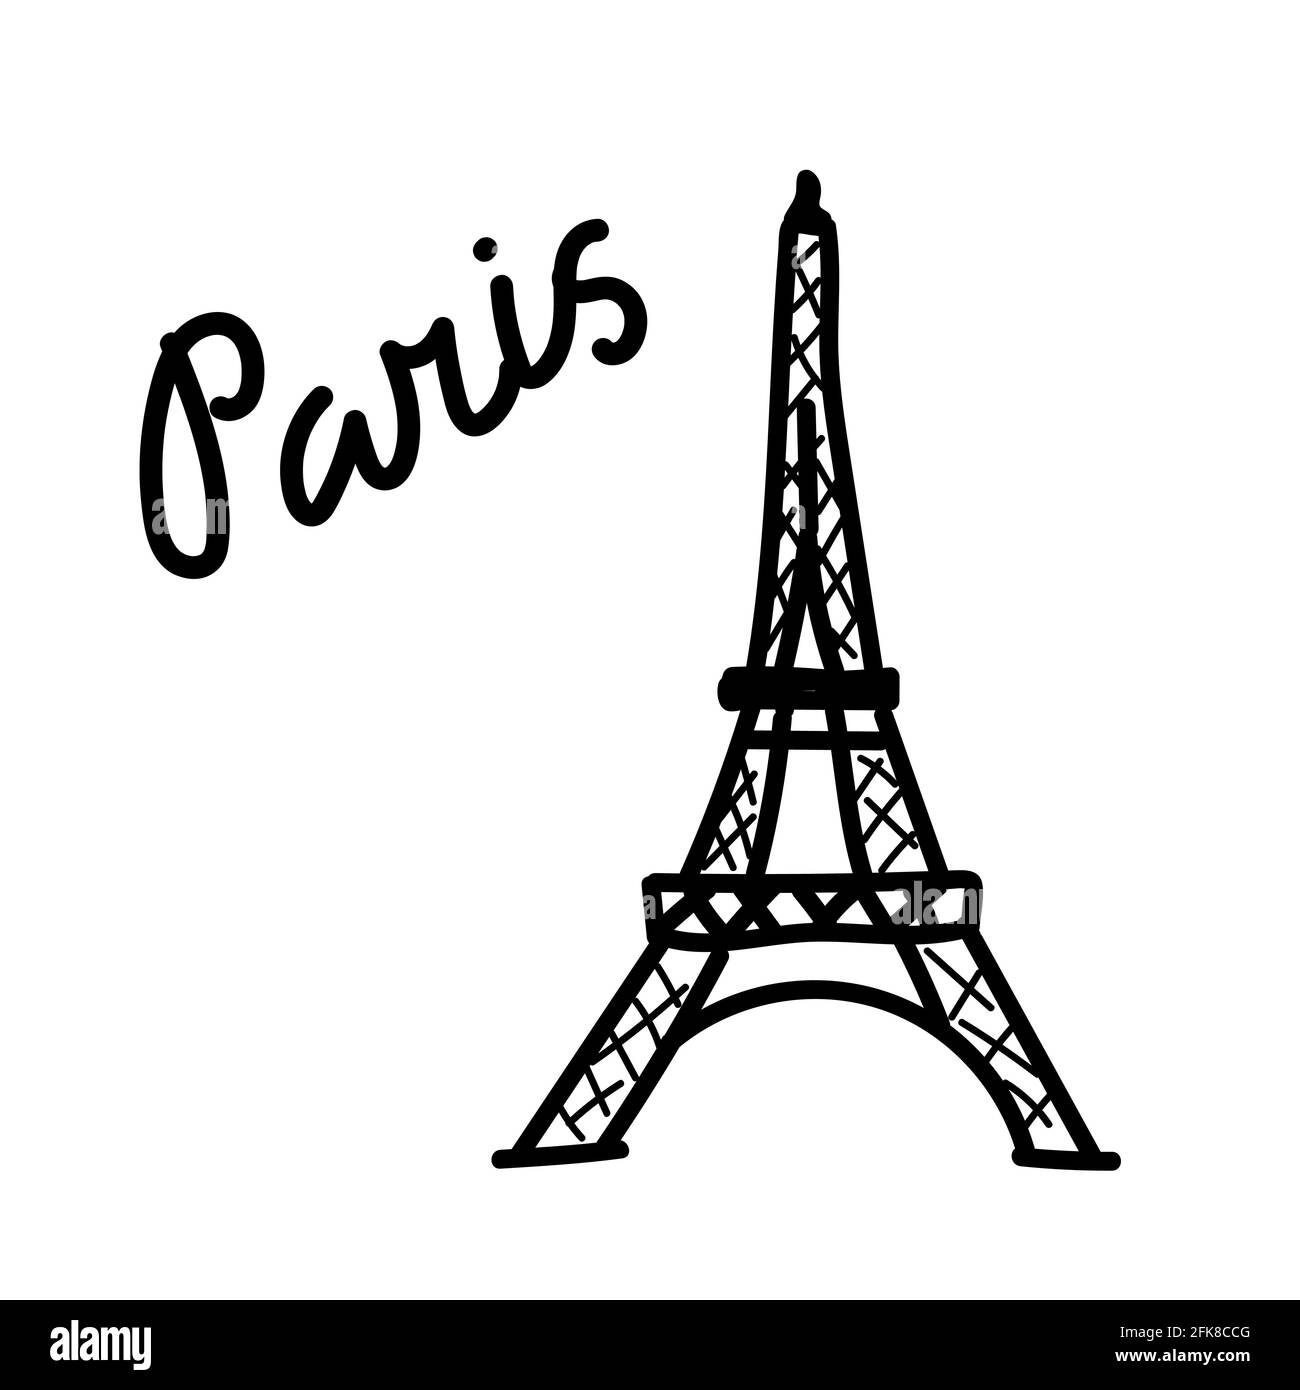 Eifel torre. Illustrazione vettoriale doodle disegnata a mano isolata sullo sfondo. Disegni semplici con colore nero. Illustrazione Vettoriale